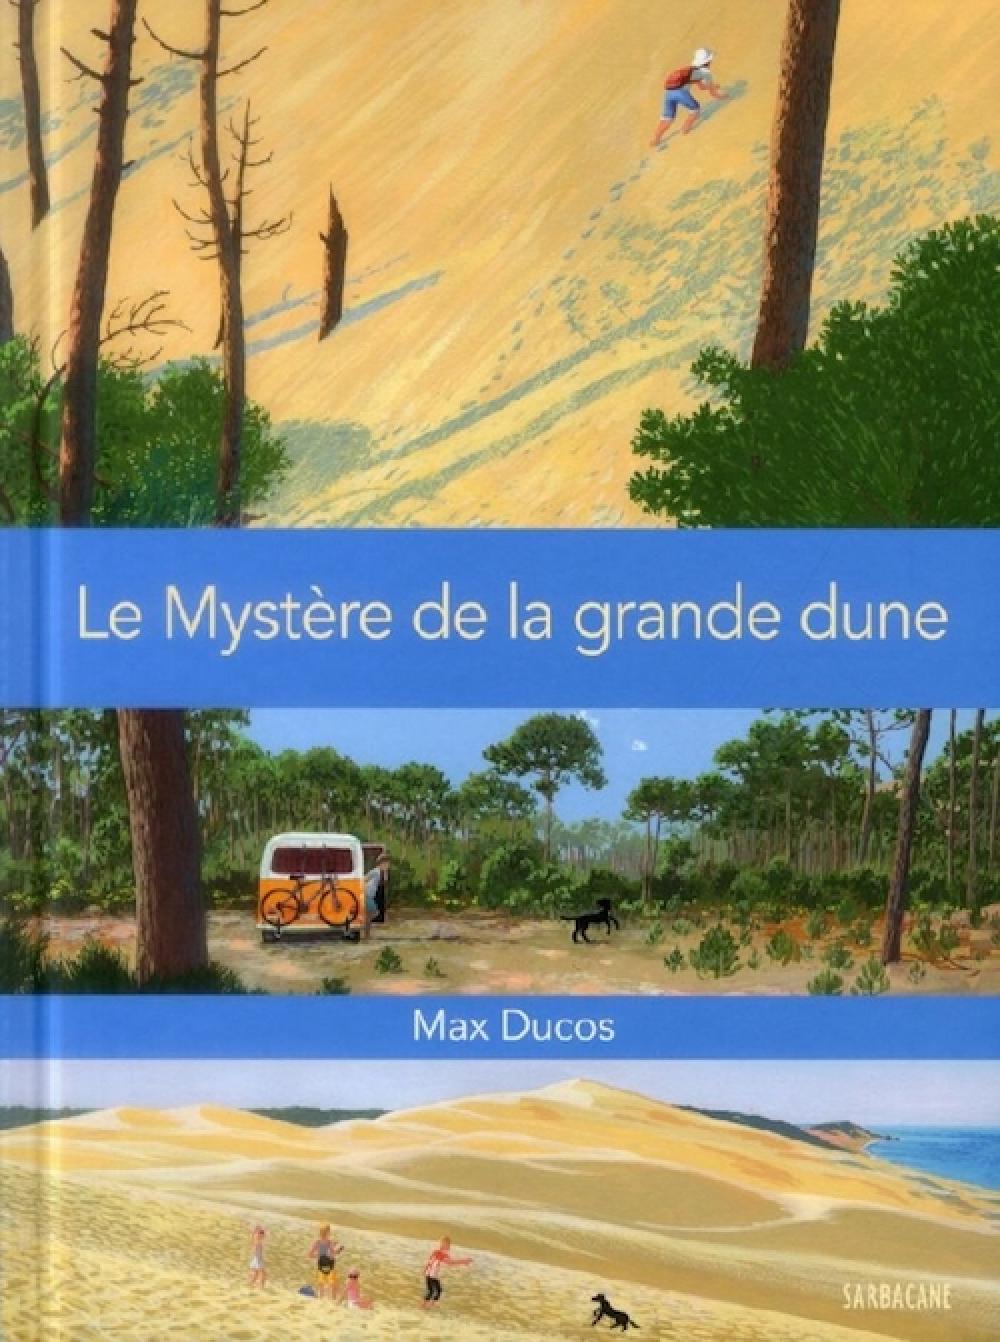 Le Mystère de la grande dune